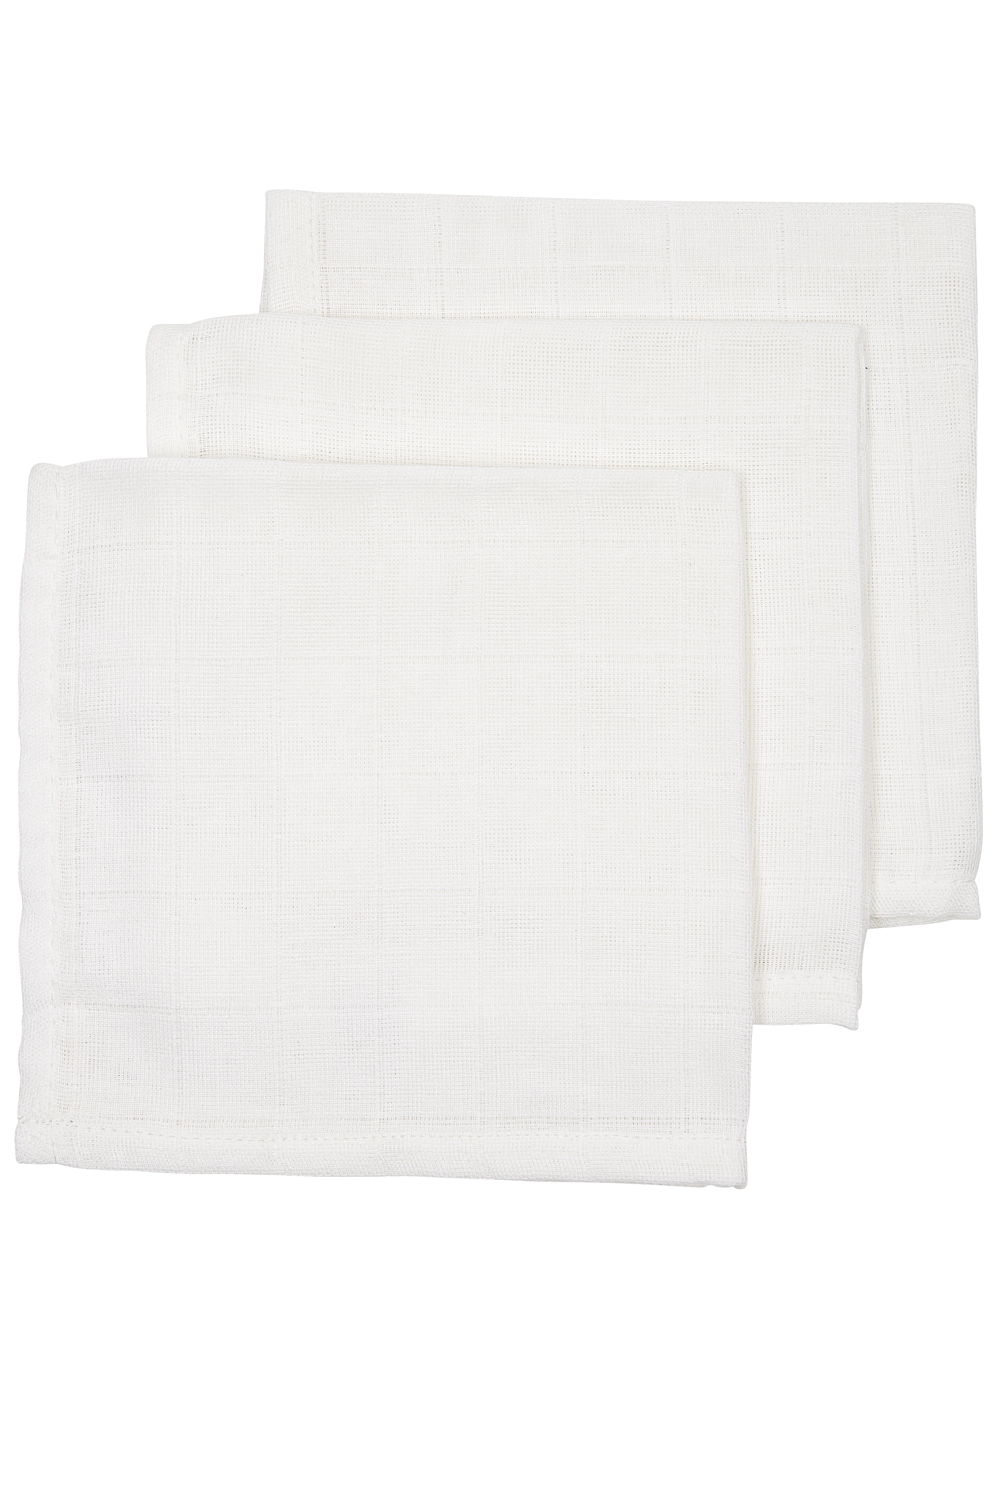 Muslin Face Cloths 3-Pack Uni - White - 30X30cm